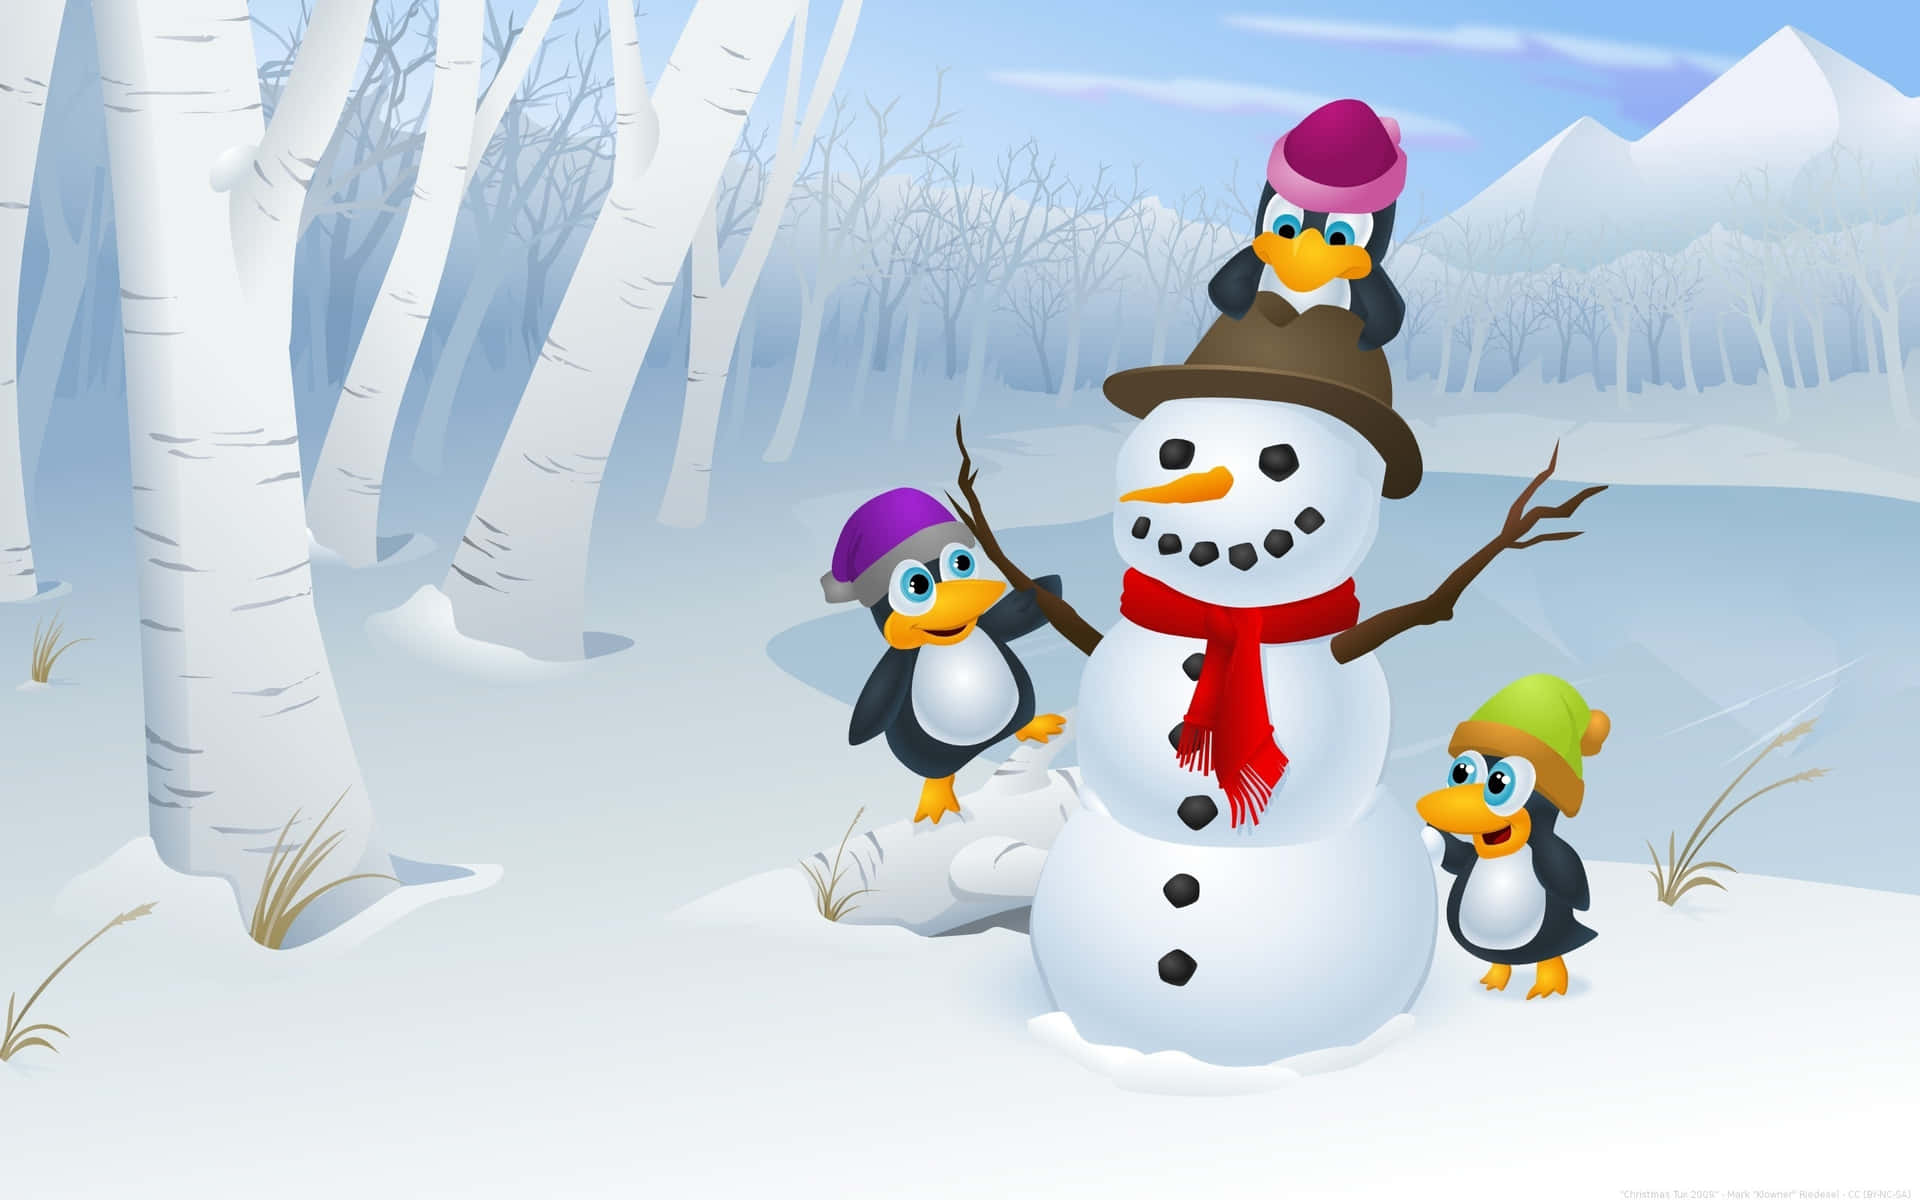 Imagende Un Pingüino De Nieve Sonriente En Un Dibujo Animado De Navidad.